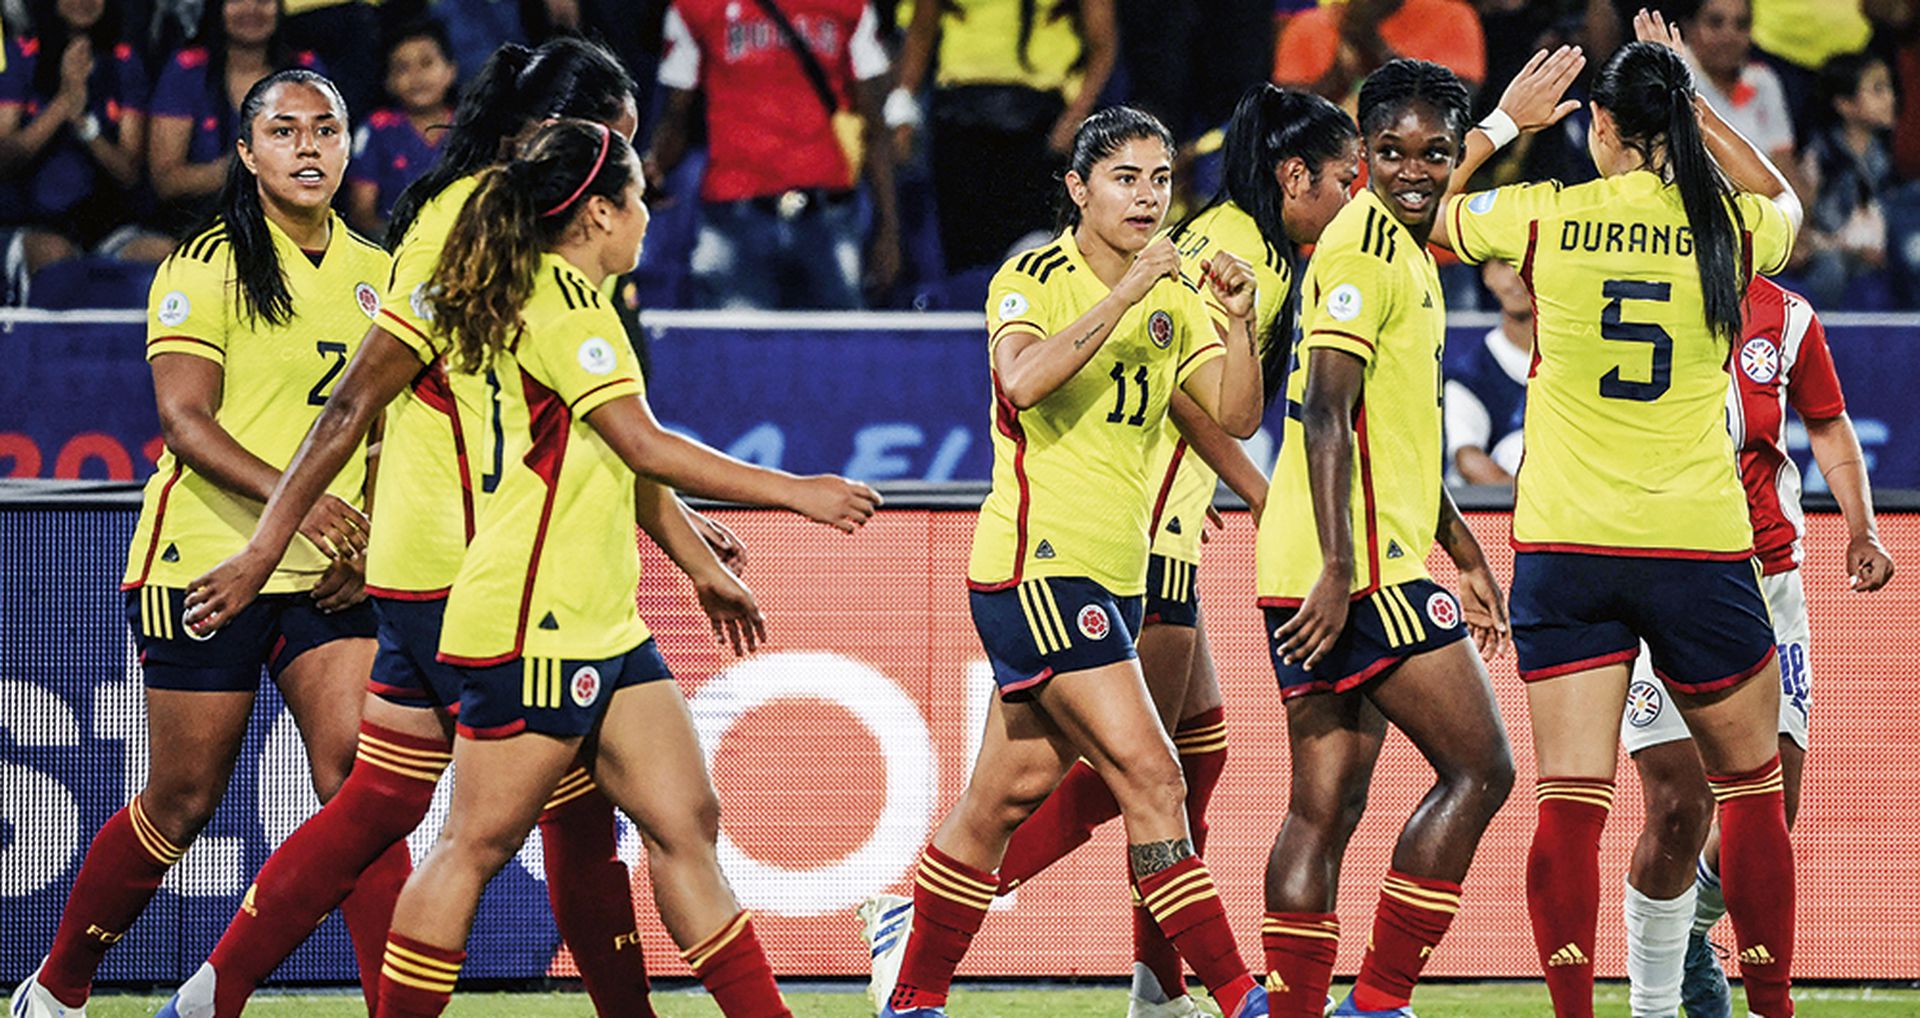 El fútbol femenino, entre éxitos y las demandas de mejoras